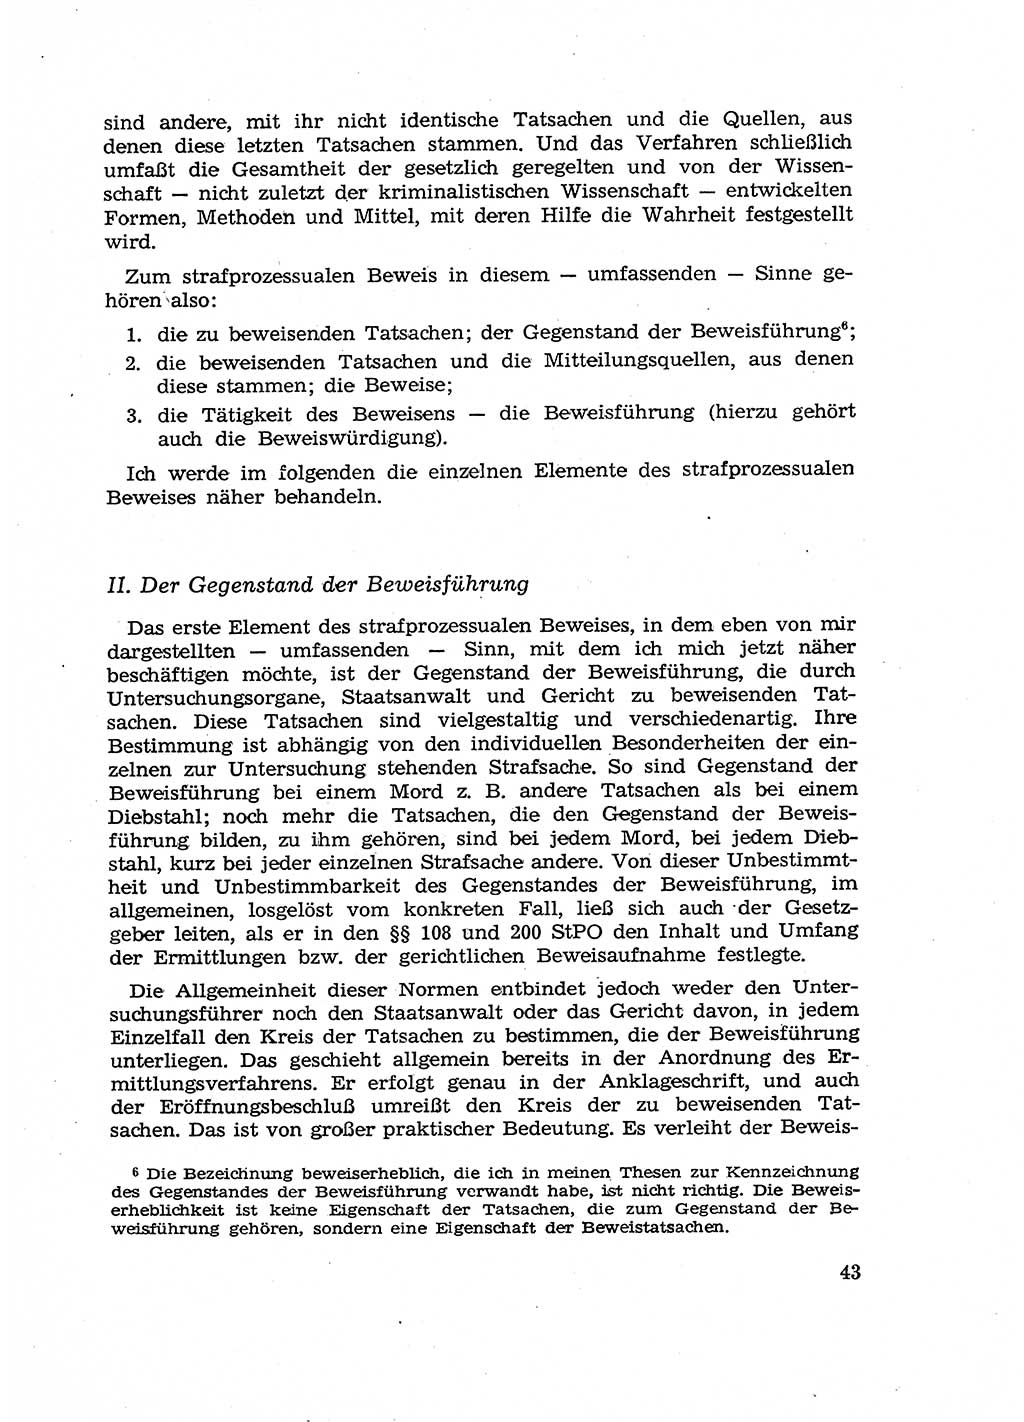 Fragen des Beweisrechts im Strafprozess [Deutsche Demokratische Republik (DDR)] 1956, Seite 43 (Fr. BeweisR. Str.-Proz. DDR 1956, S. 43)